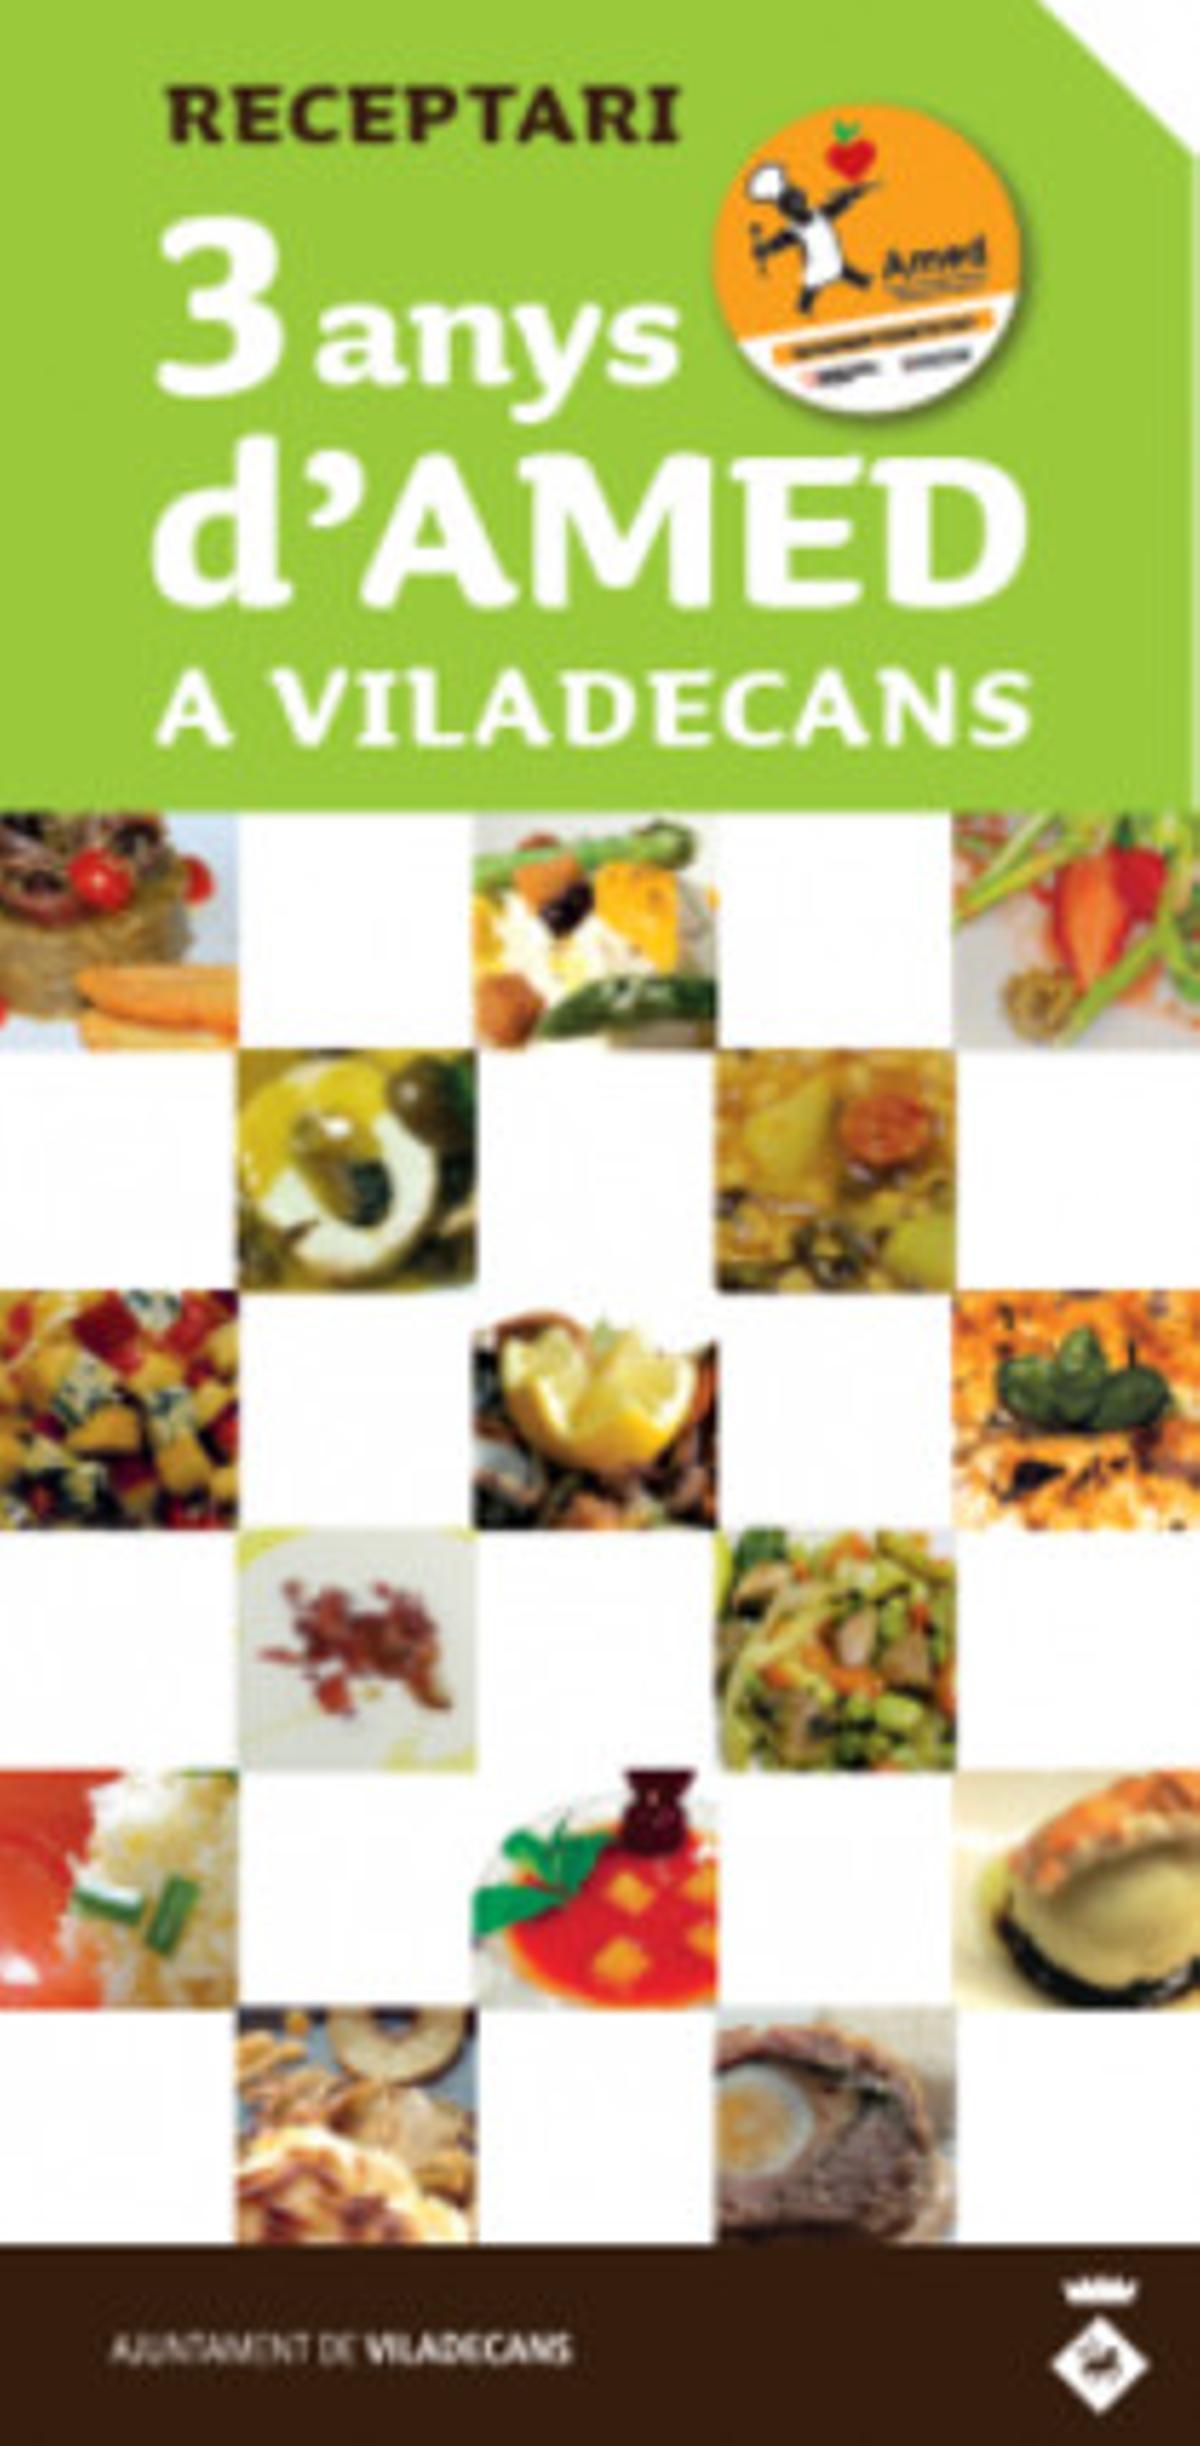 Recopilación de recetas saludables de cocineros de Viladecans